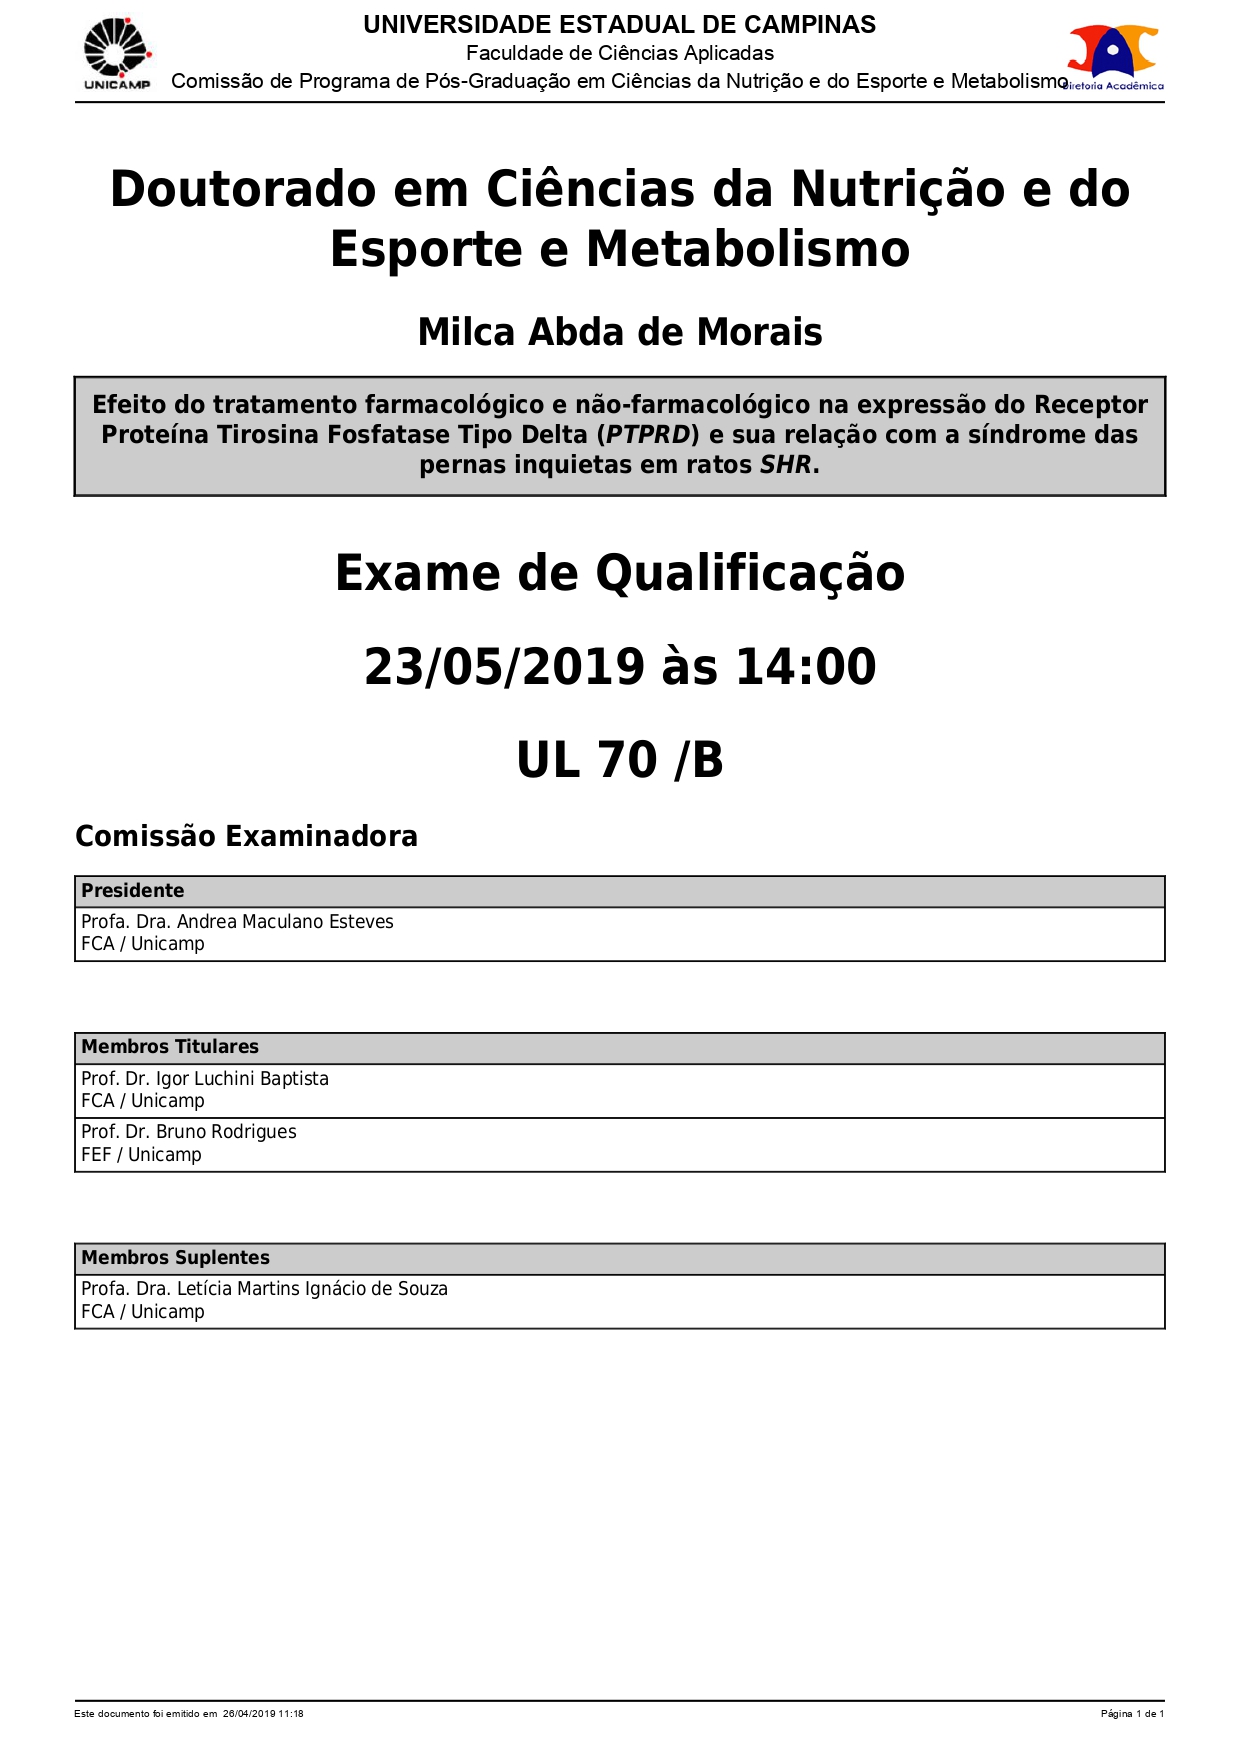 Qualificação Milca Abda de Morais 23 05 2019 CNEM page 0001